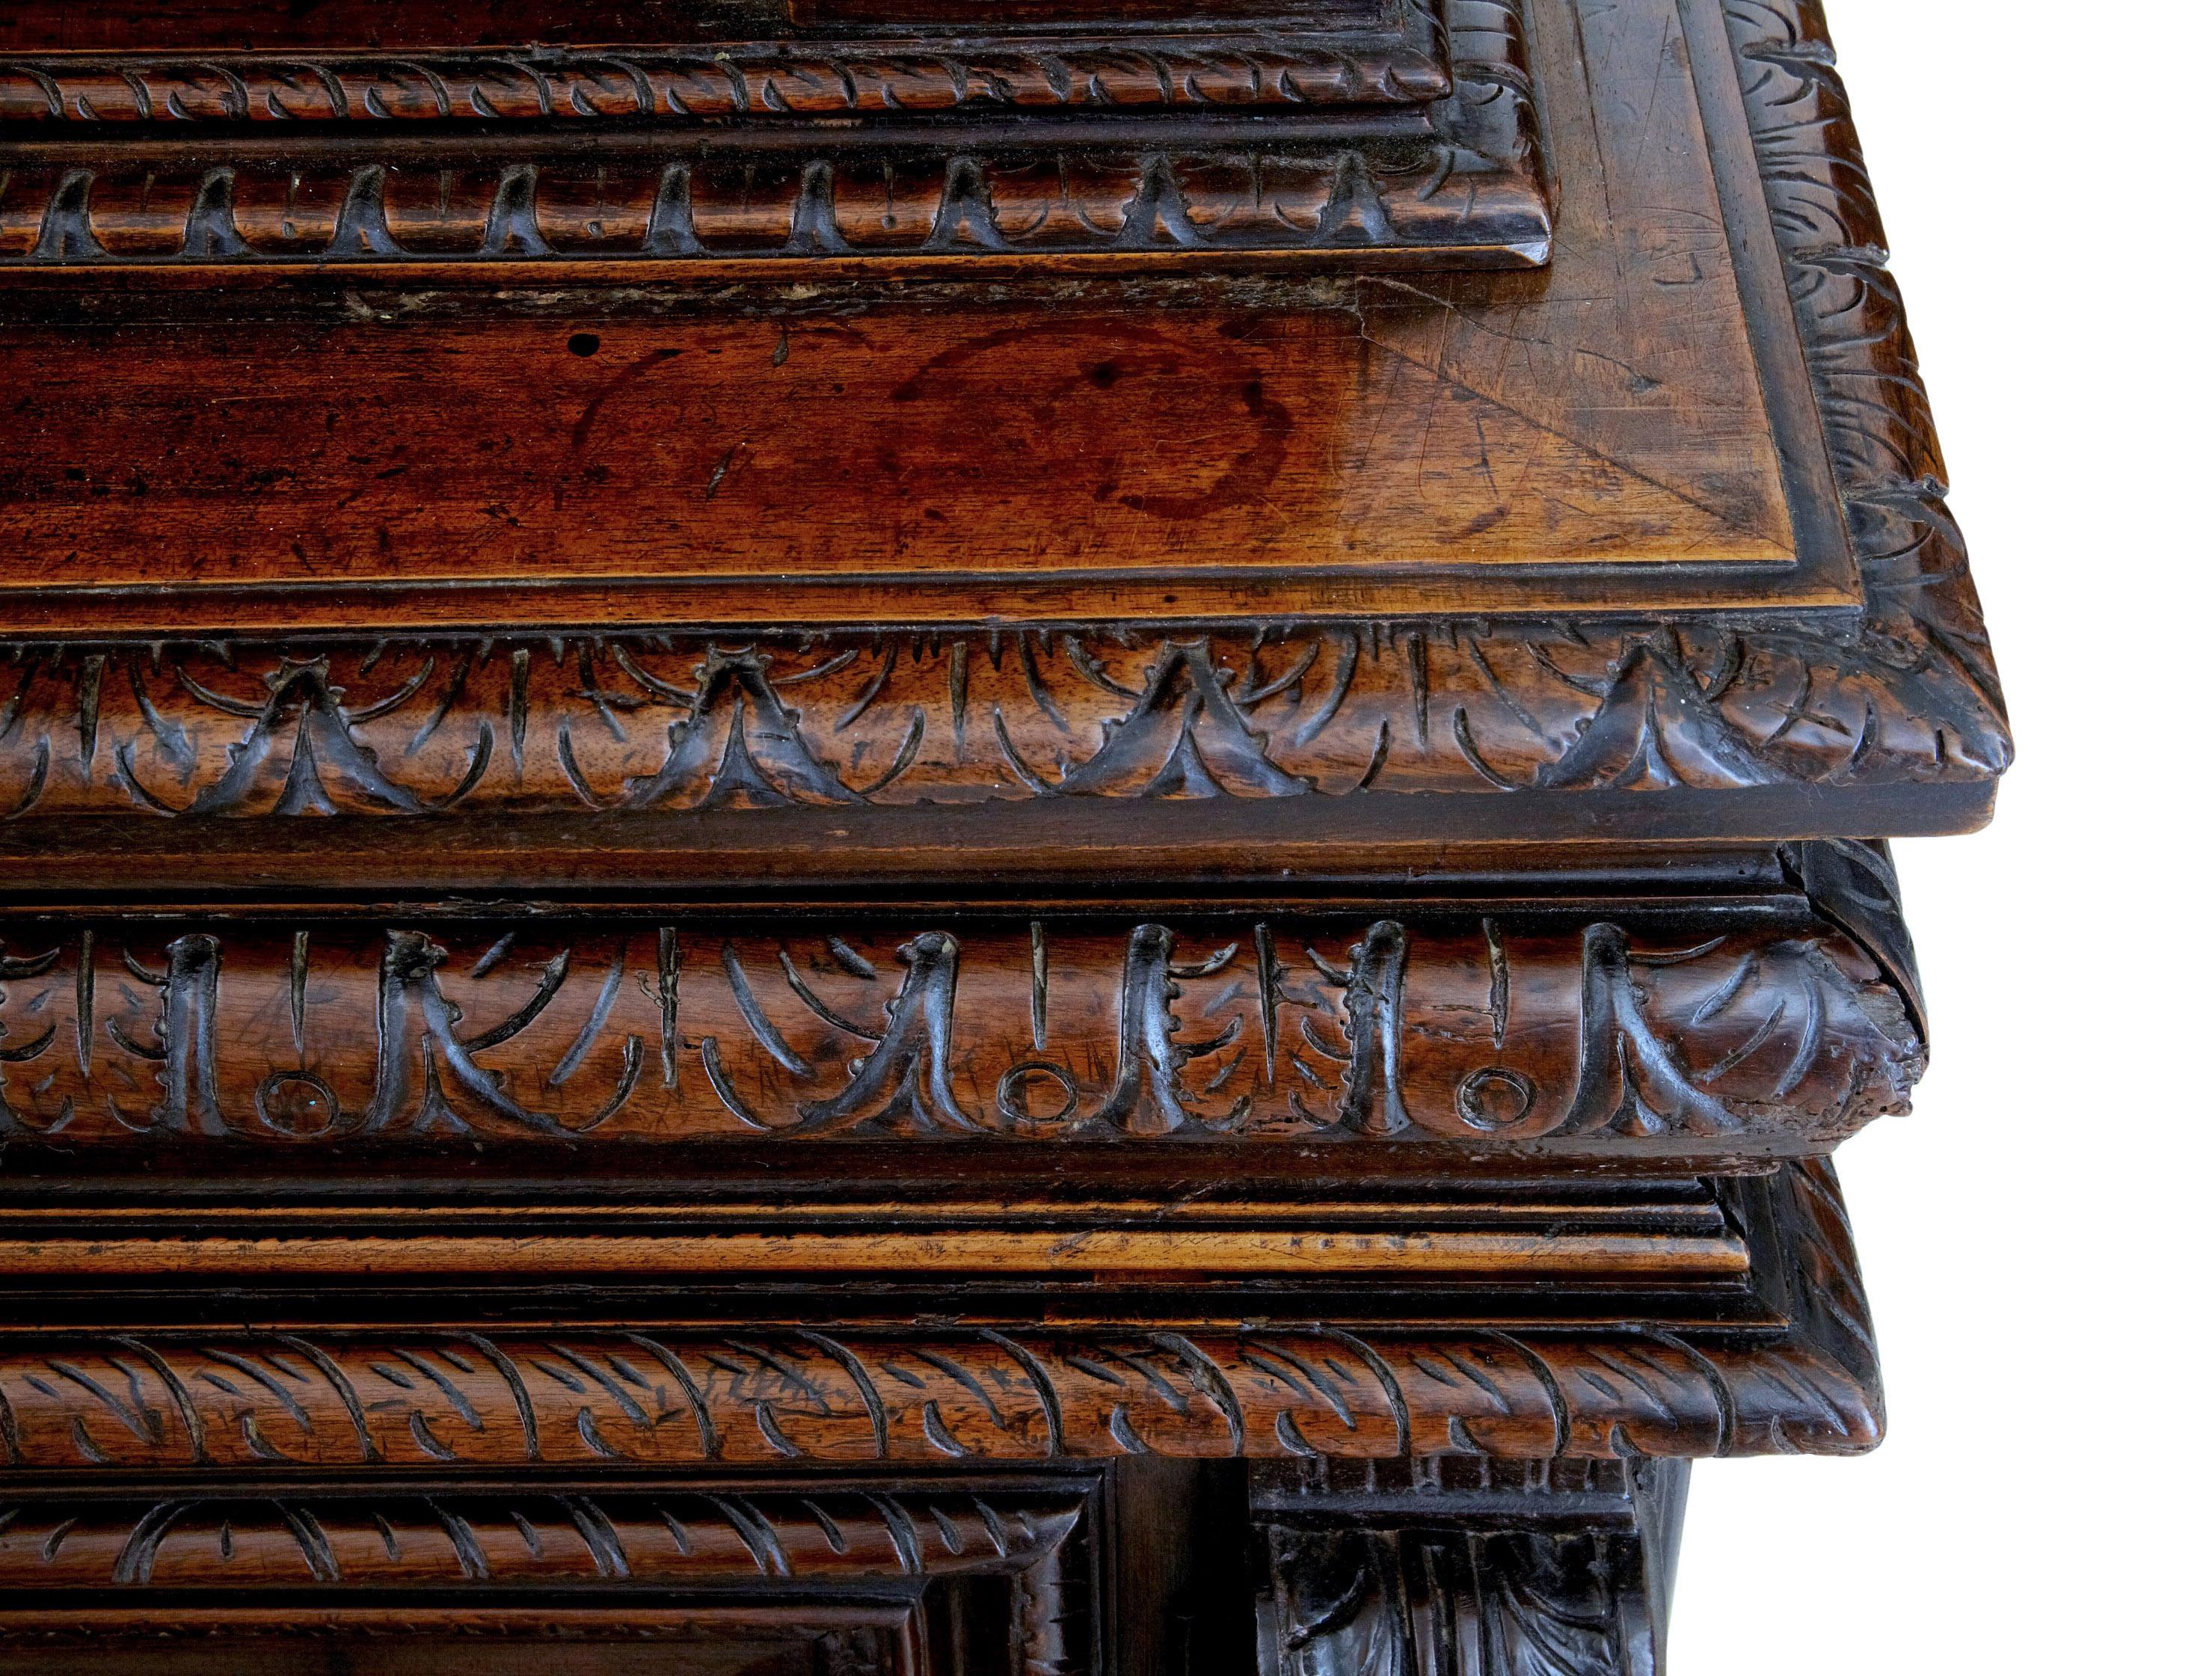 Cabinet en noyer français abondamment sculpté du milieu du 19e siècle, vers 1850.

Armoire en noyer sculpté en 2 parties. La partie supérieure est composée de portes doubles magnifiquement sculptées, flanquées de colonnes et surmontées d'une